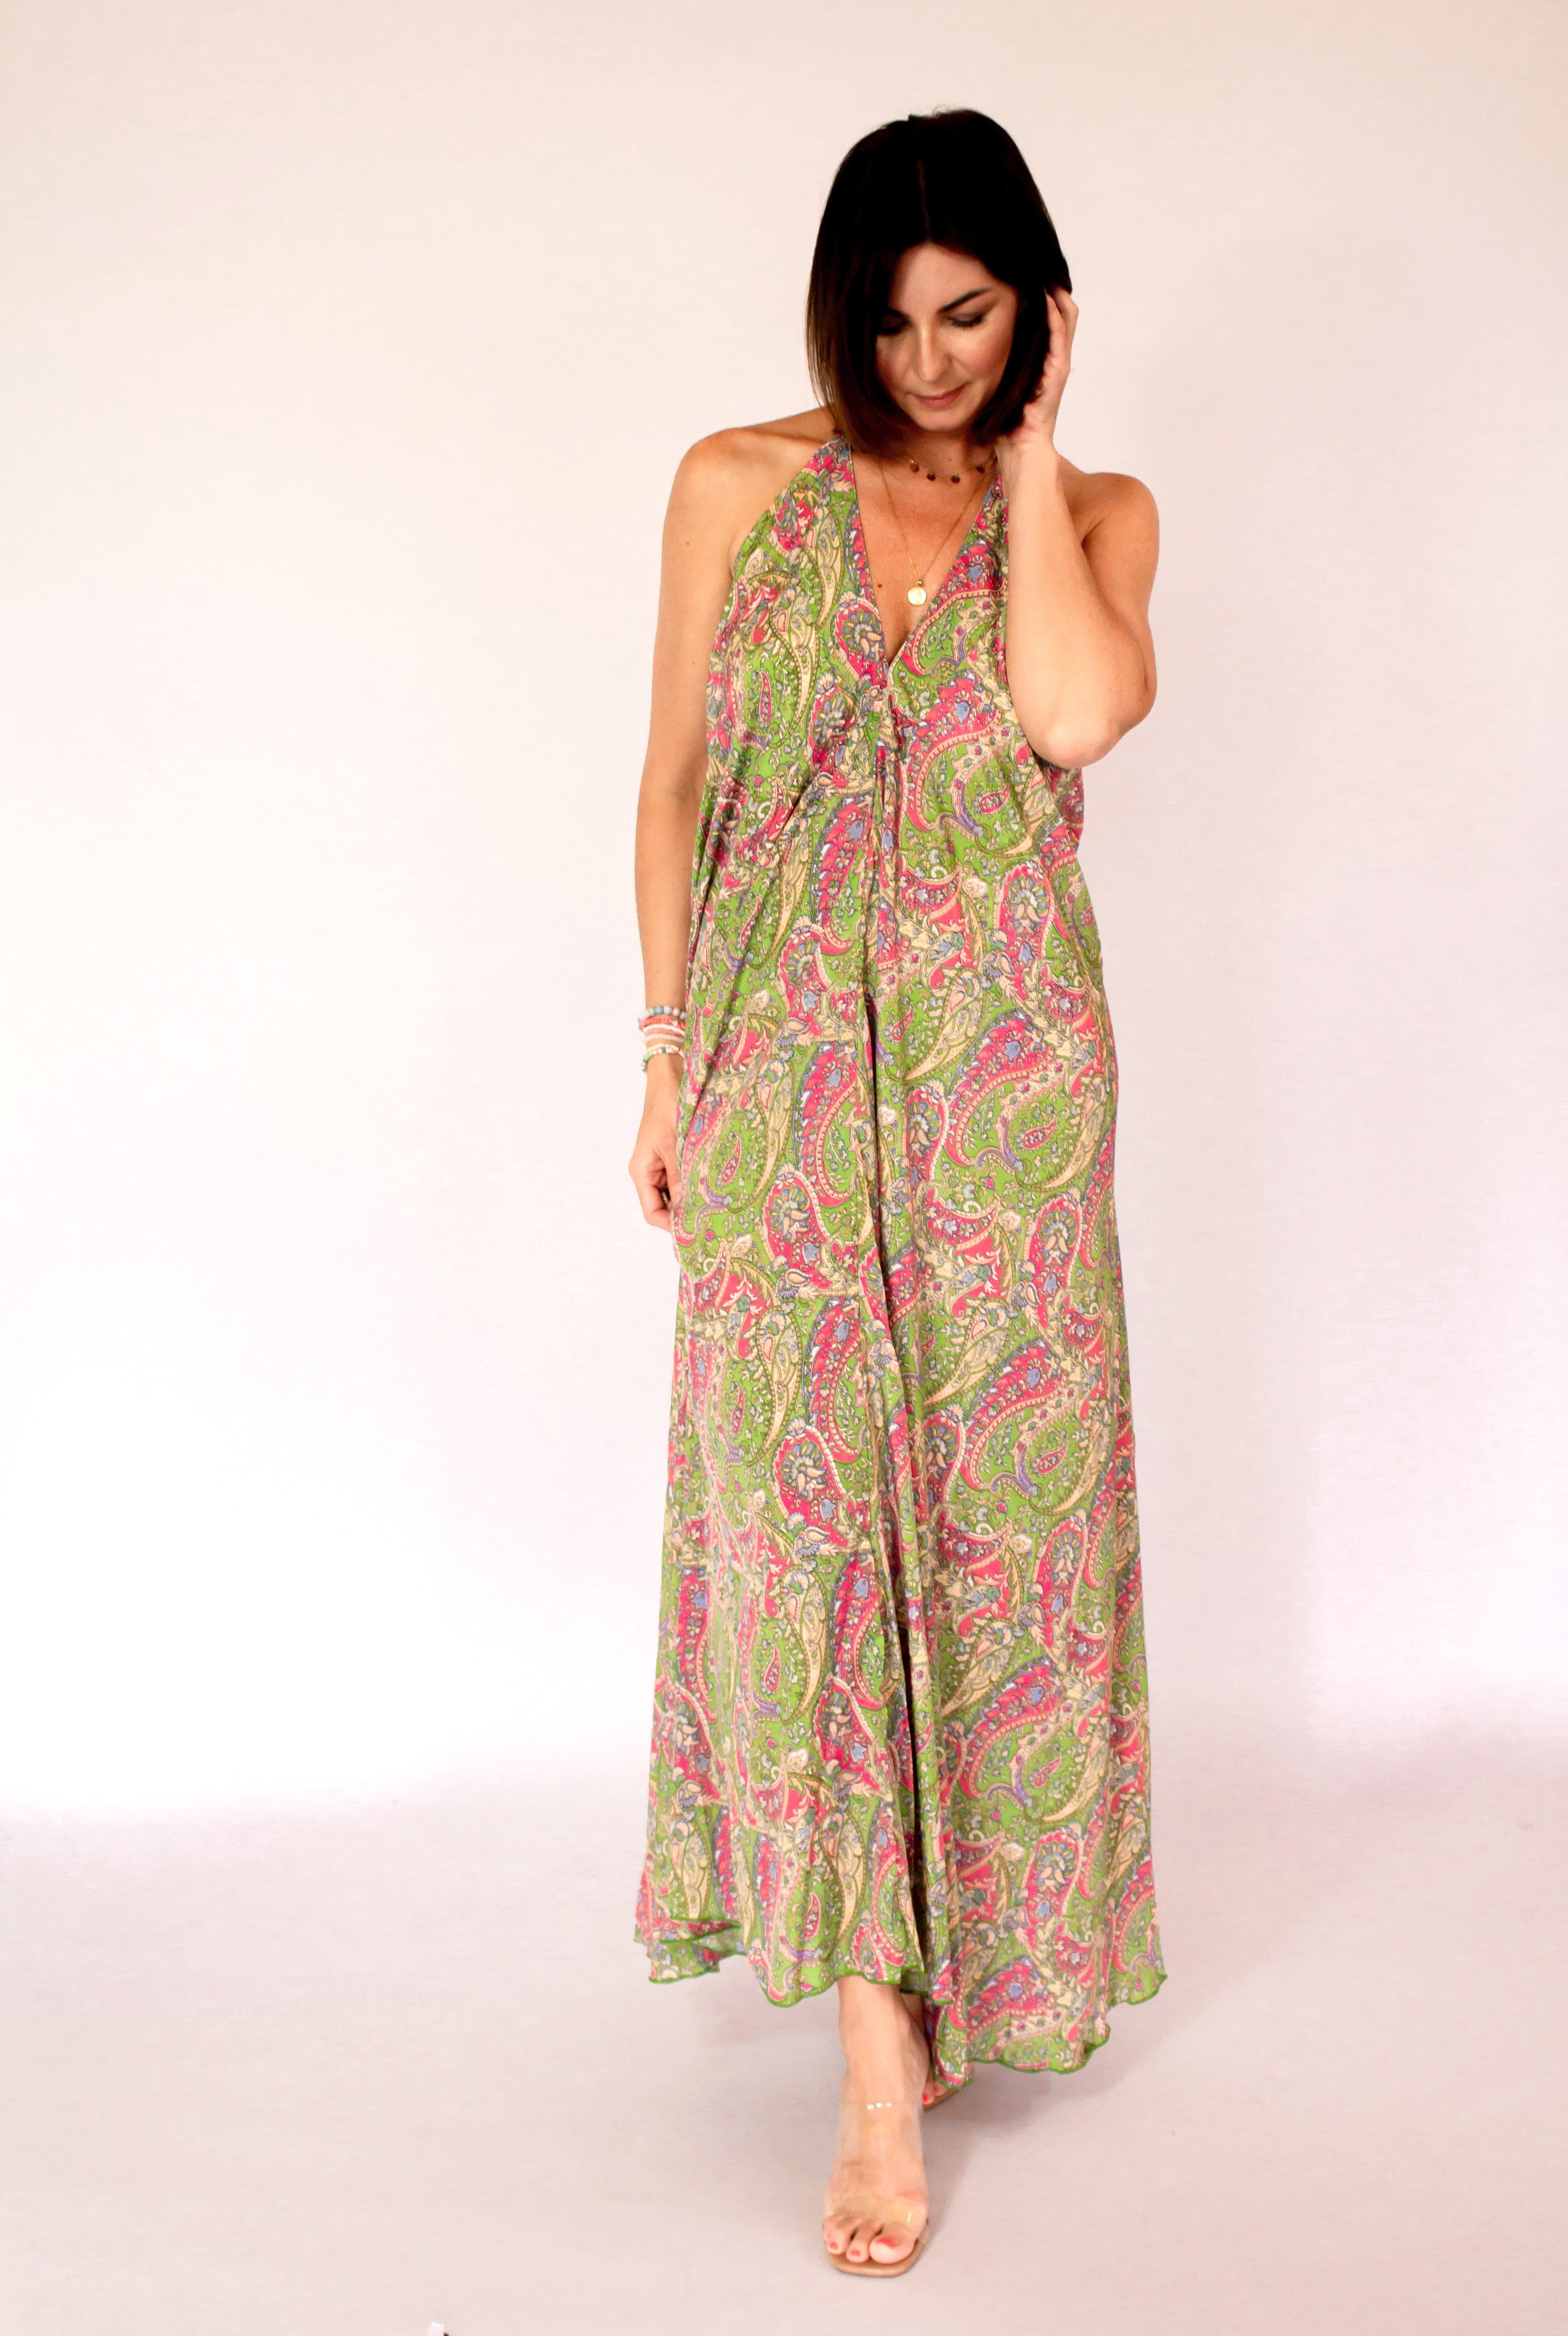 MonCaprise by grün-pink Strandkleid Maxikleid Clothè Passform, leicht luftig Rückenausschnitt ausgestellte tiefem leicht Seidenkleid Kleid & mit